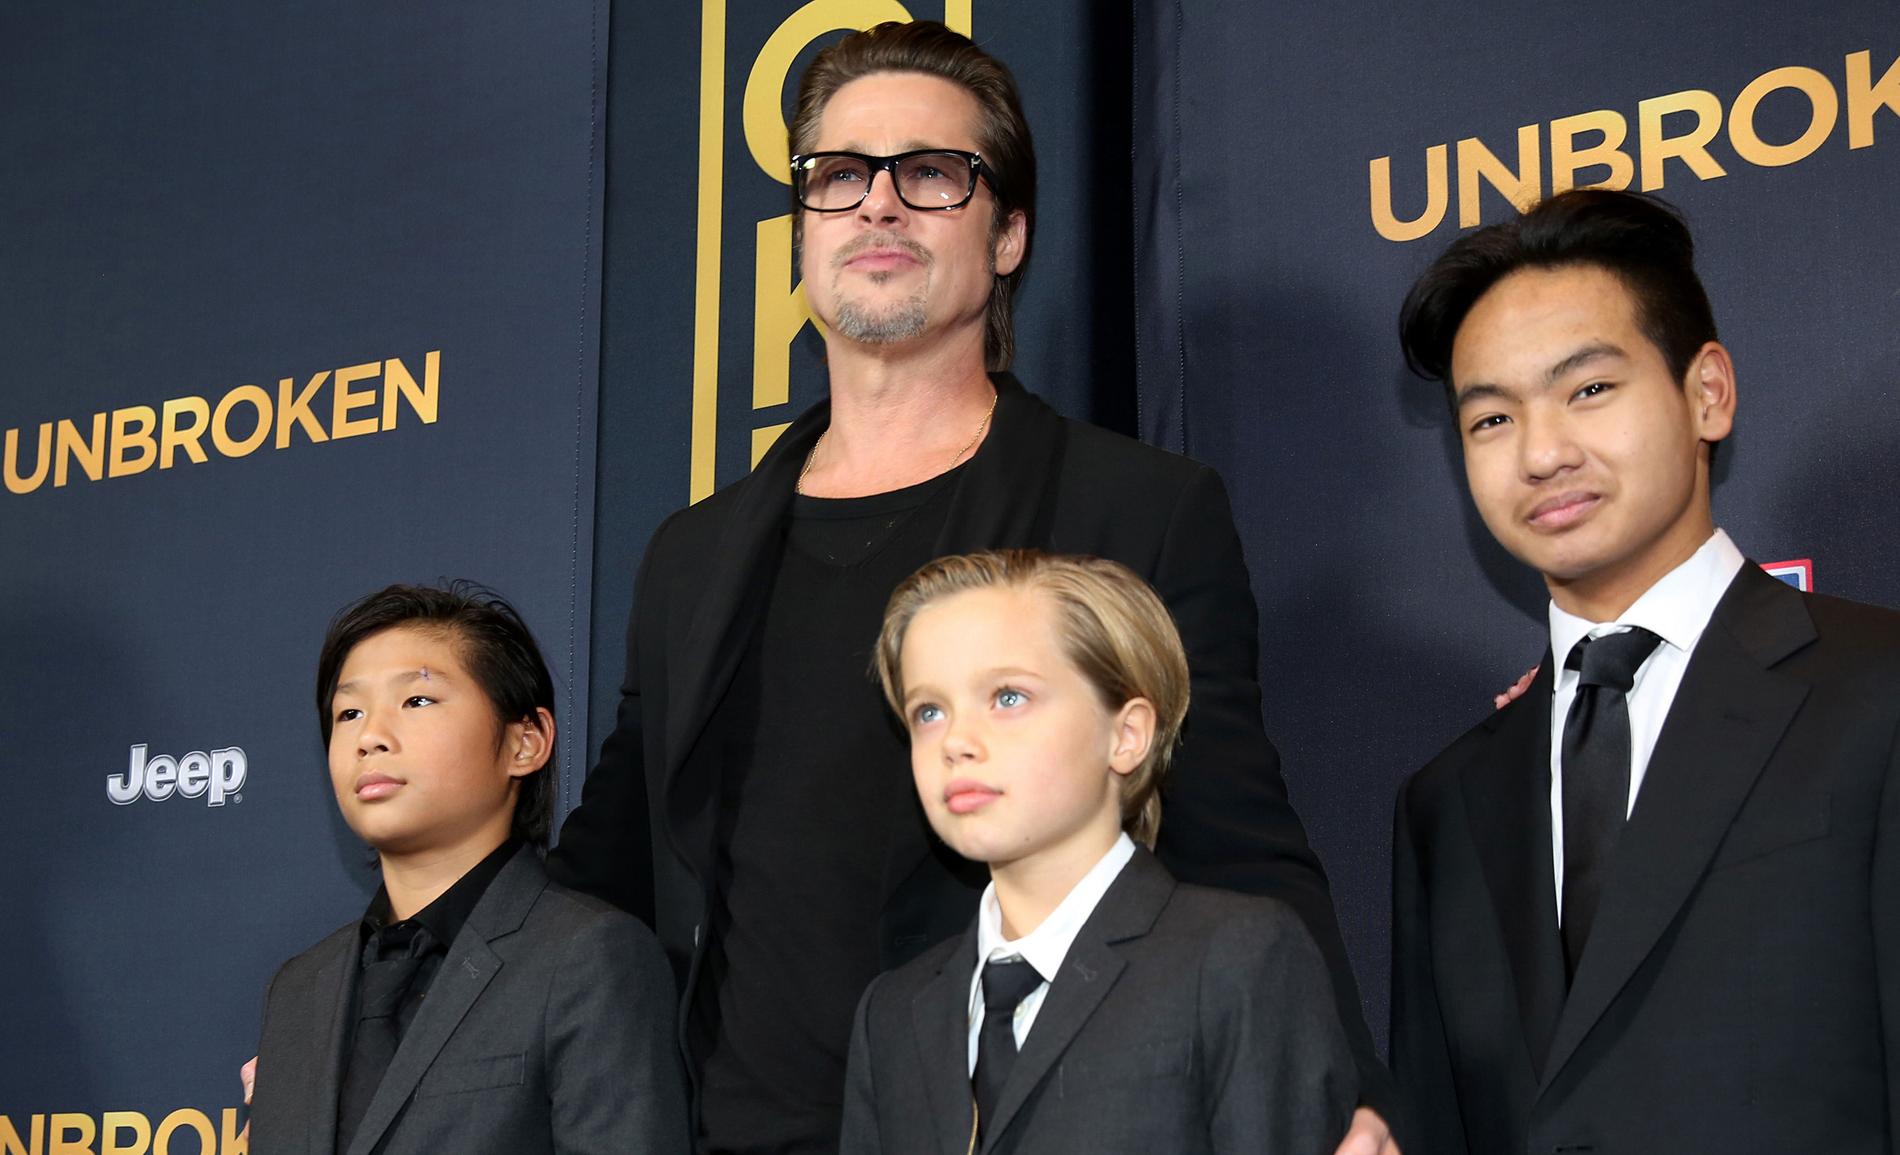 Brad Pitt med tre av sina barn. Sonen Maddox till höger i bild.